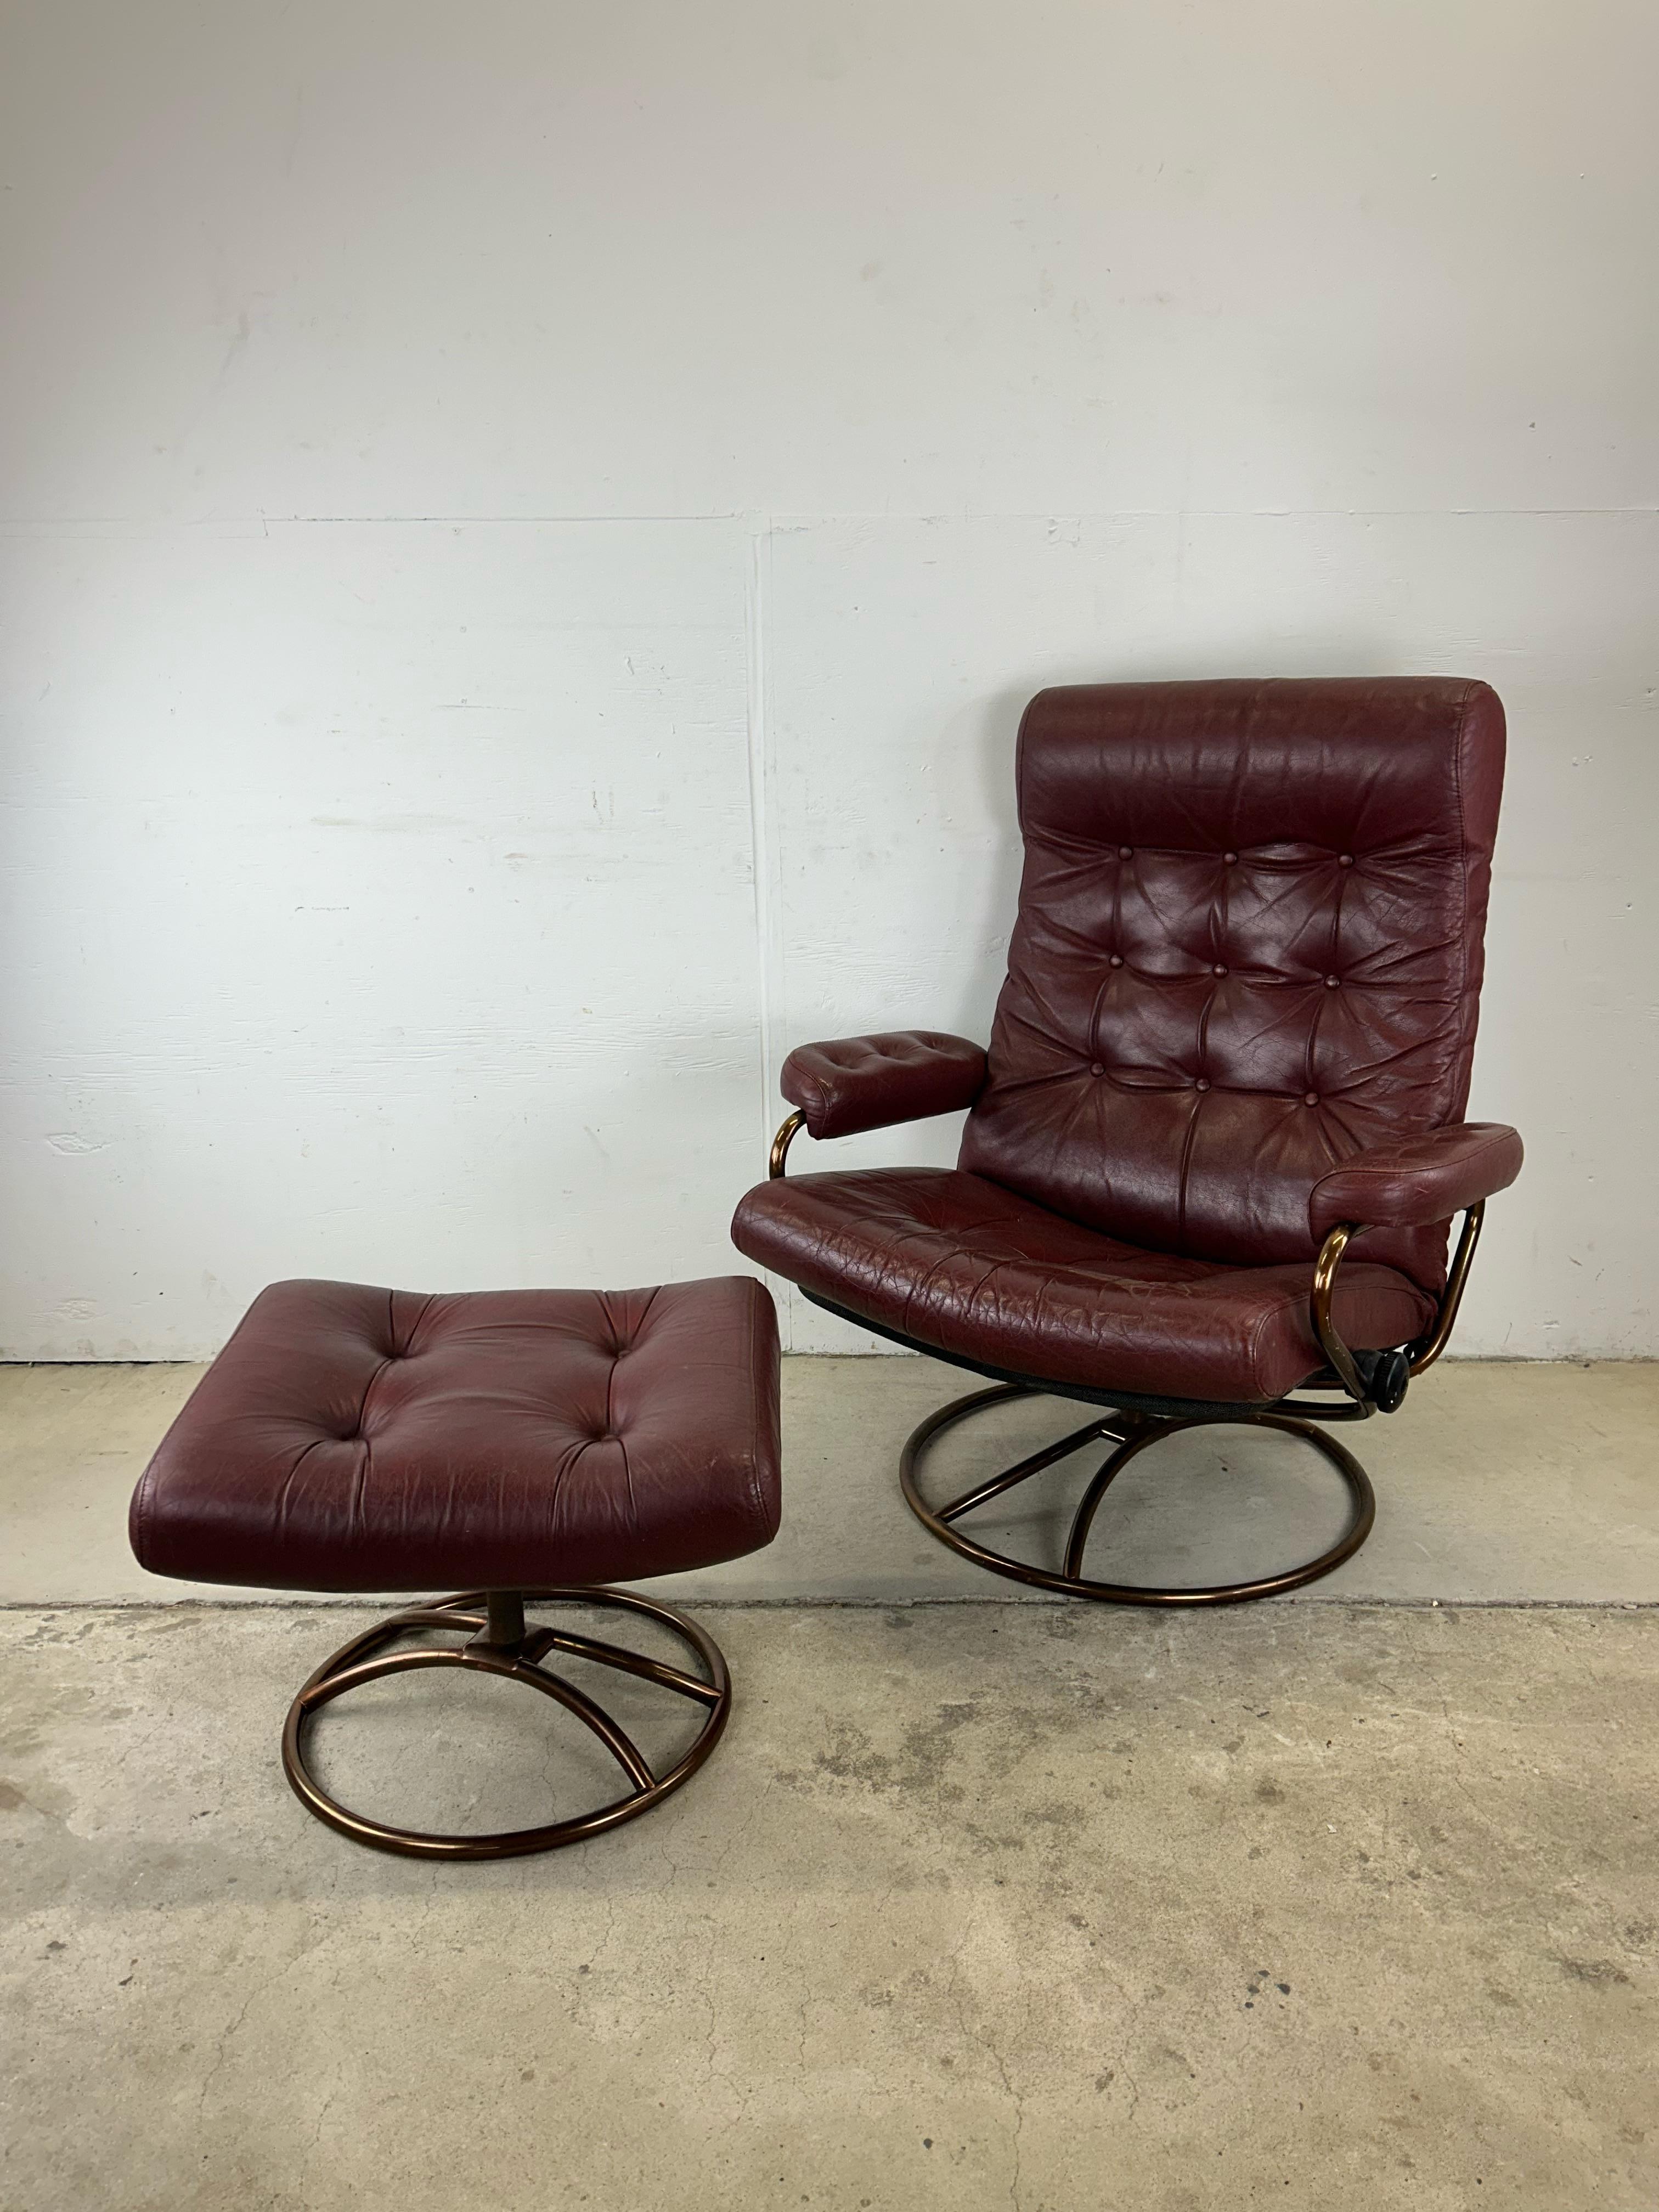 Cette chaise de salon moderne du milieu du siècle par Ekornes ASA Stressless présente une belle assise en cuir rouge tufté et un cadre teinté de bronze avec base pivotante.

Dimensions : 32.5w 28d 39.5h 17sh 21.5ah 
Pouf : 21.5w 18d 15.5h 

Condit :